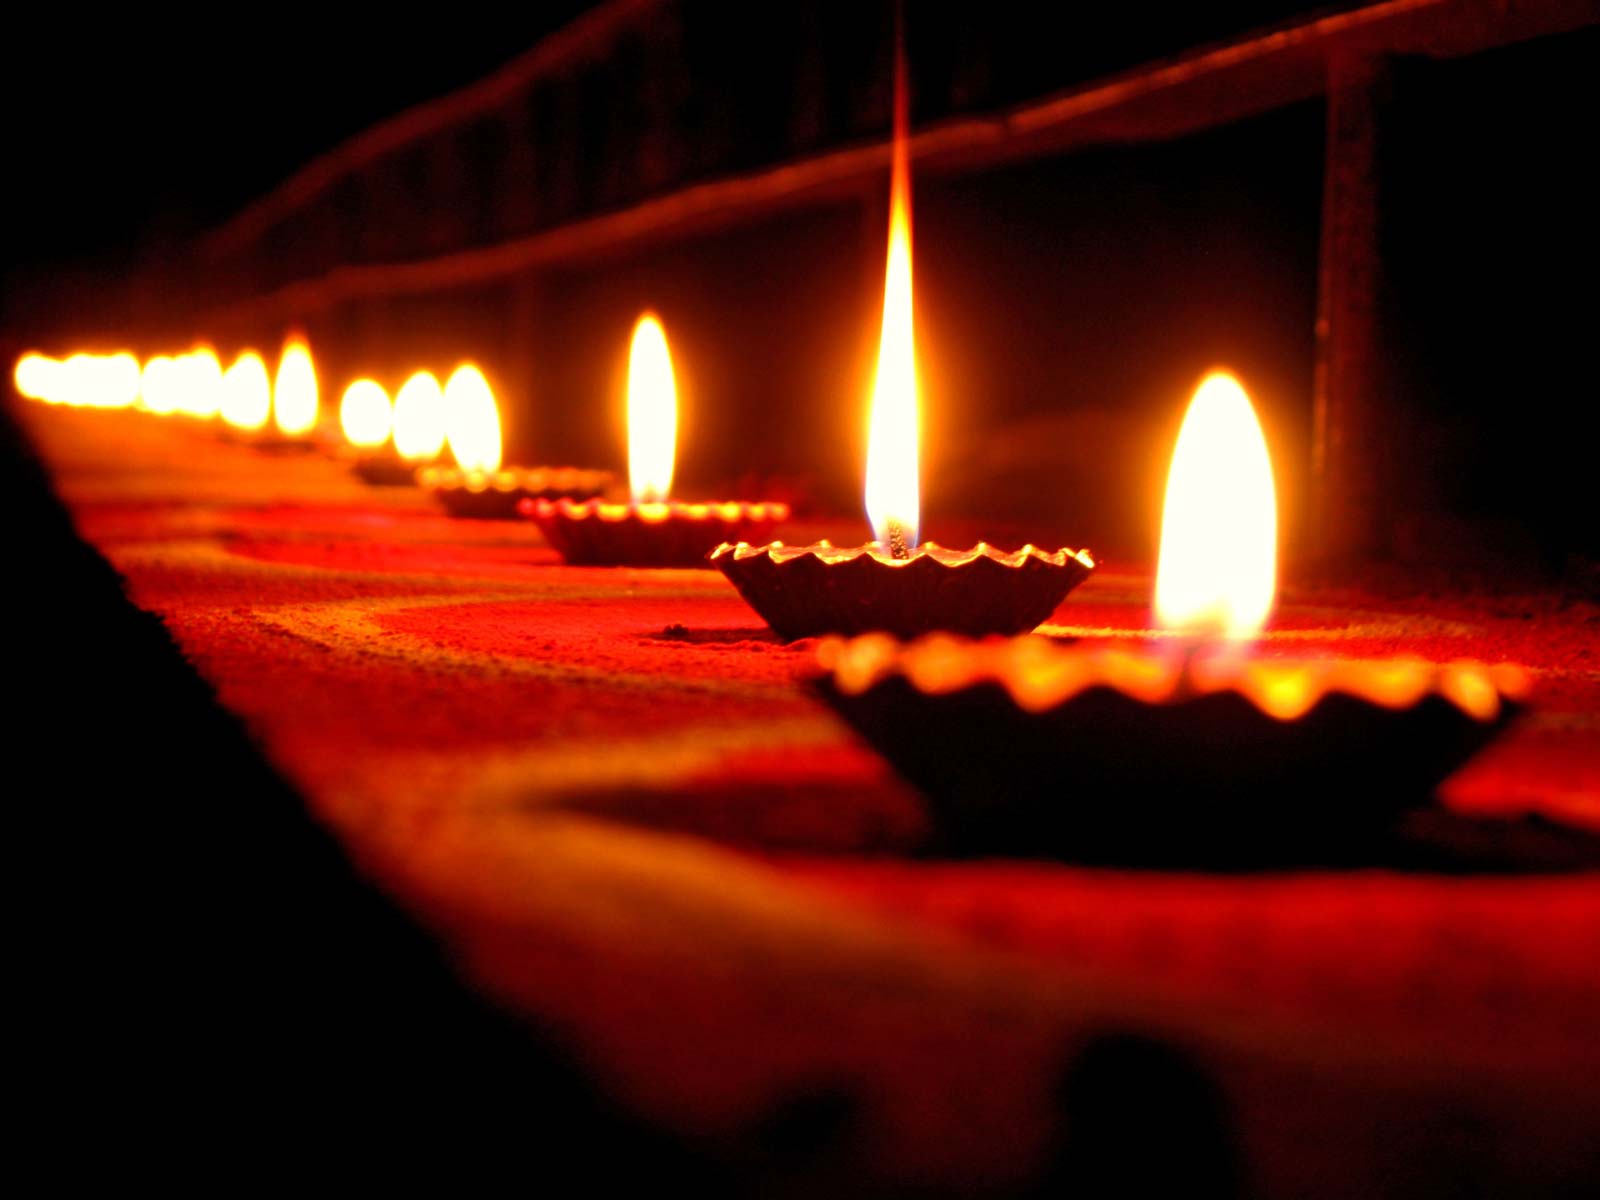 Reasons why we celebrate Diwali